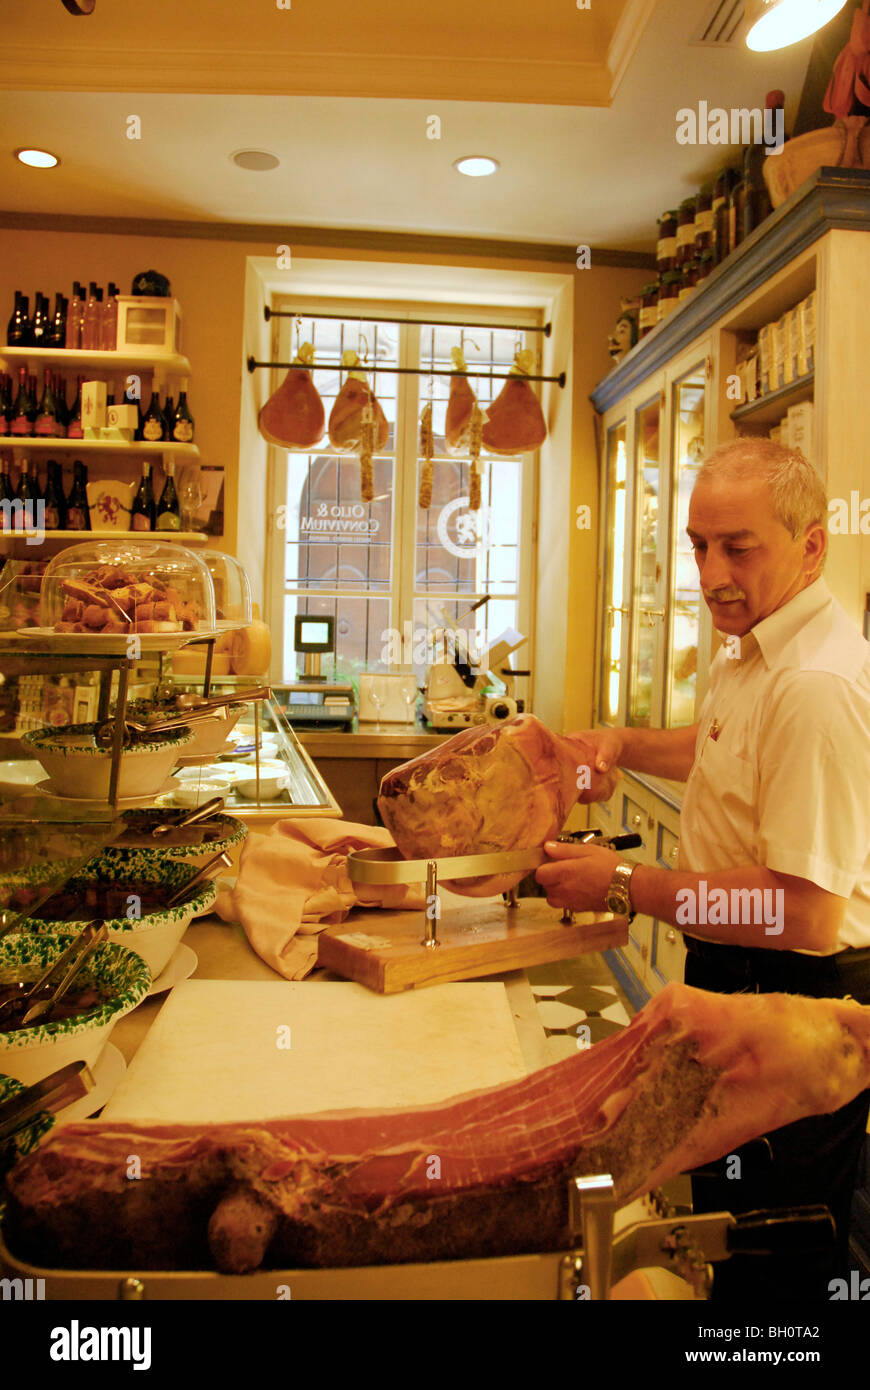 Un homme mûr au prosciutto coupe delikatessen Olio & Convivum, Via S. Spirito, Florence, Toscane, Italie, Europe Banque D'Images